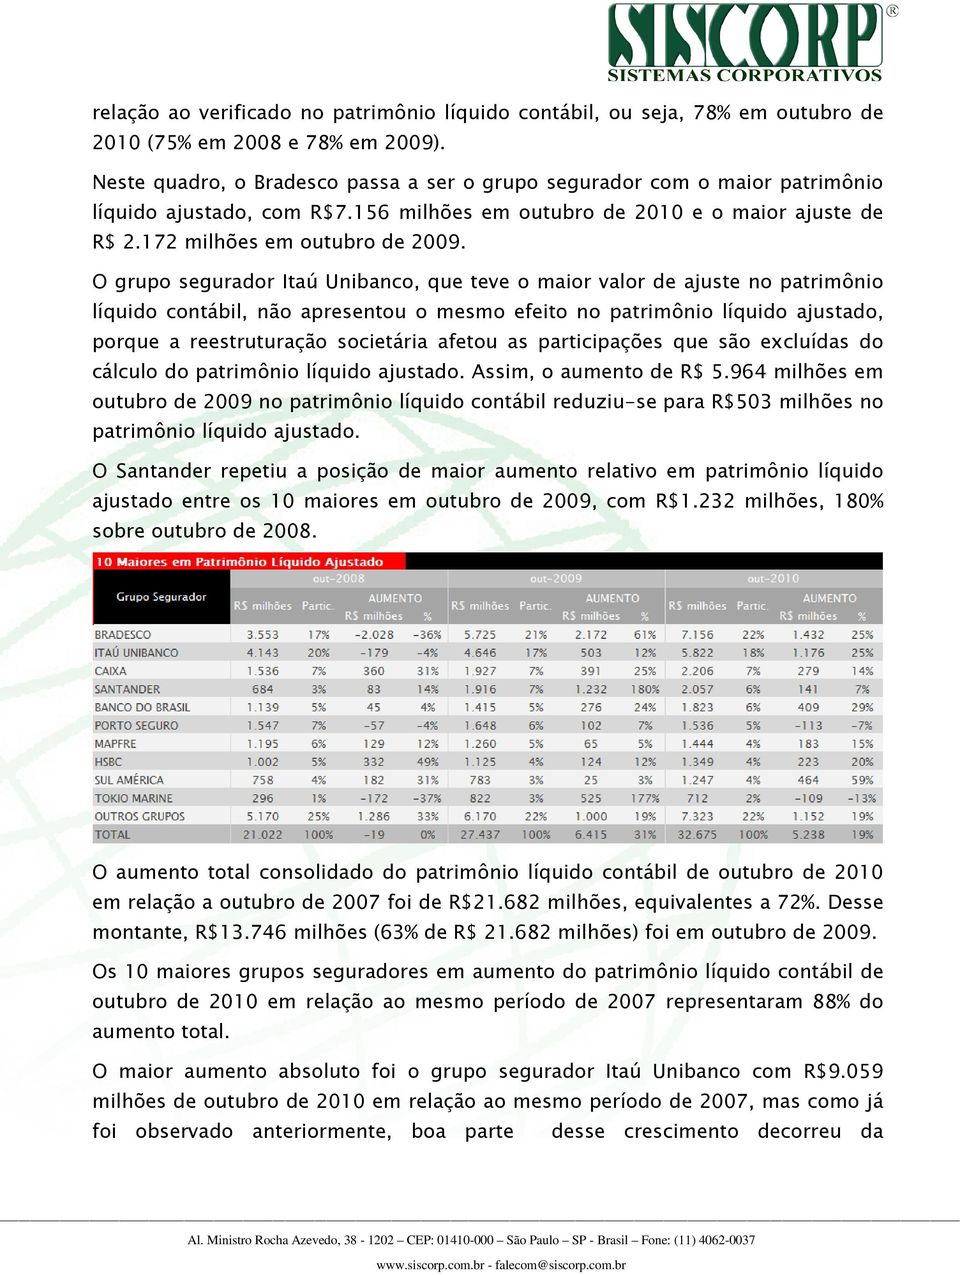 O grupo segurador Itaú Unibanco, que teve o maior valor de ajuste no patrimônio líquido contábil, não apresentou o mesmo efeito no patrimônio líquido ajustado, porque a reestruturação societária